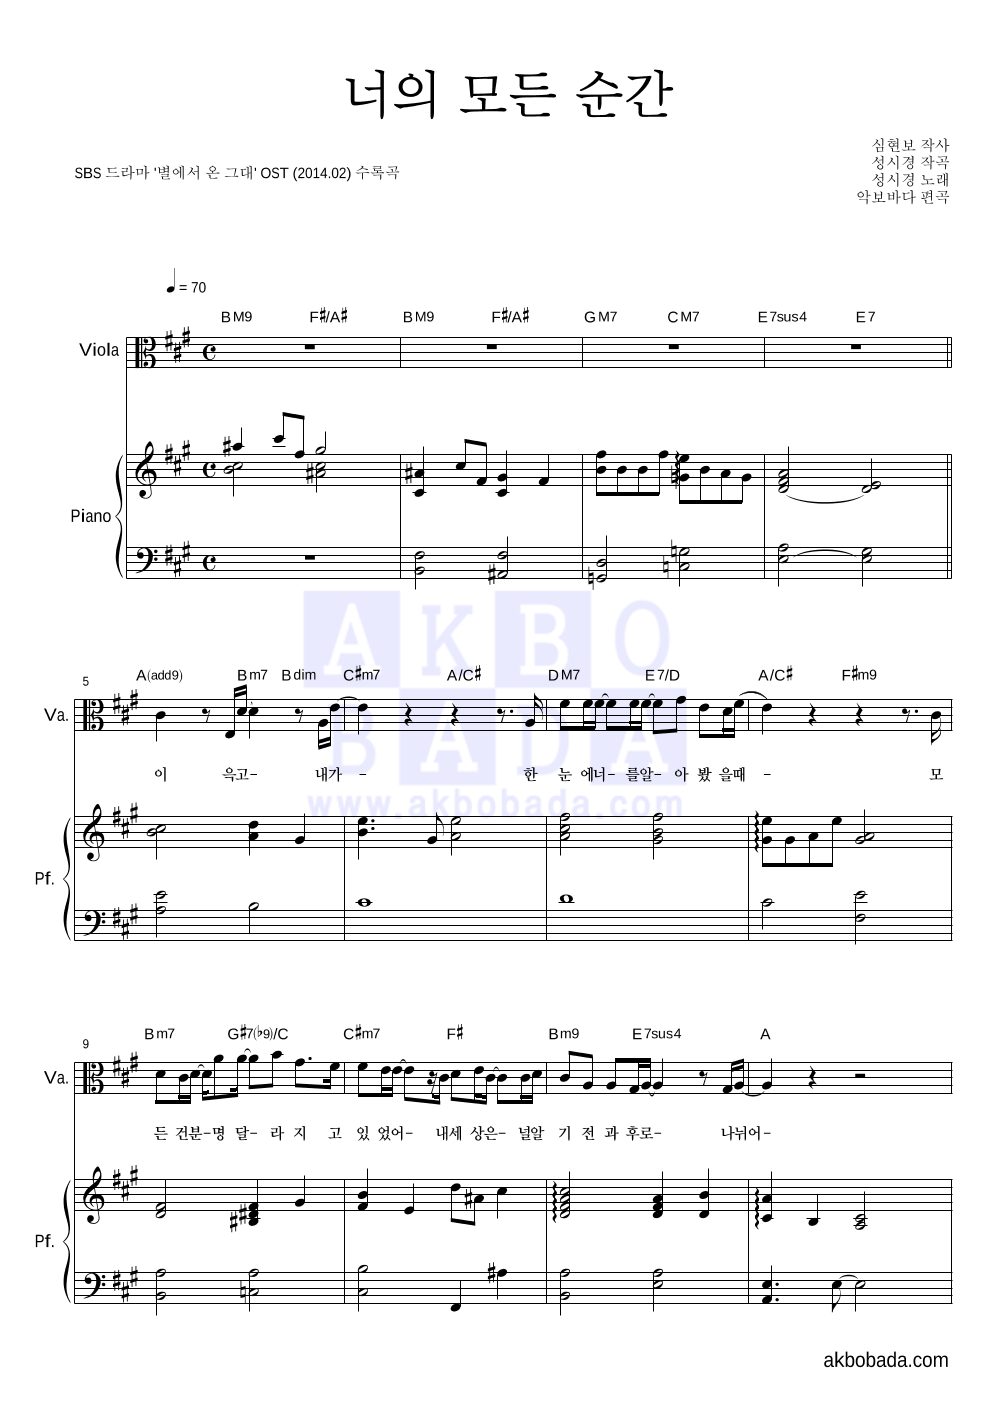 성시경 - 너의 모든 순간 (Piano Ver.) 비올라&피아노 악보 